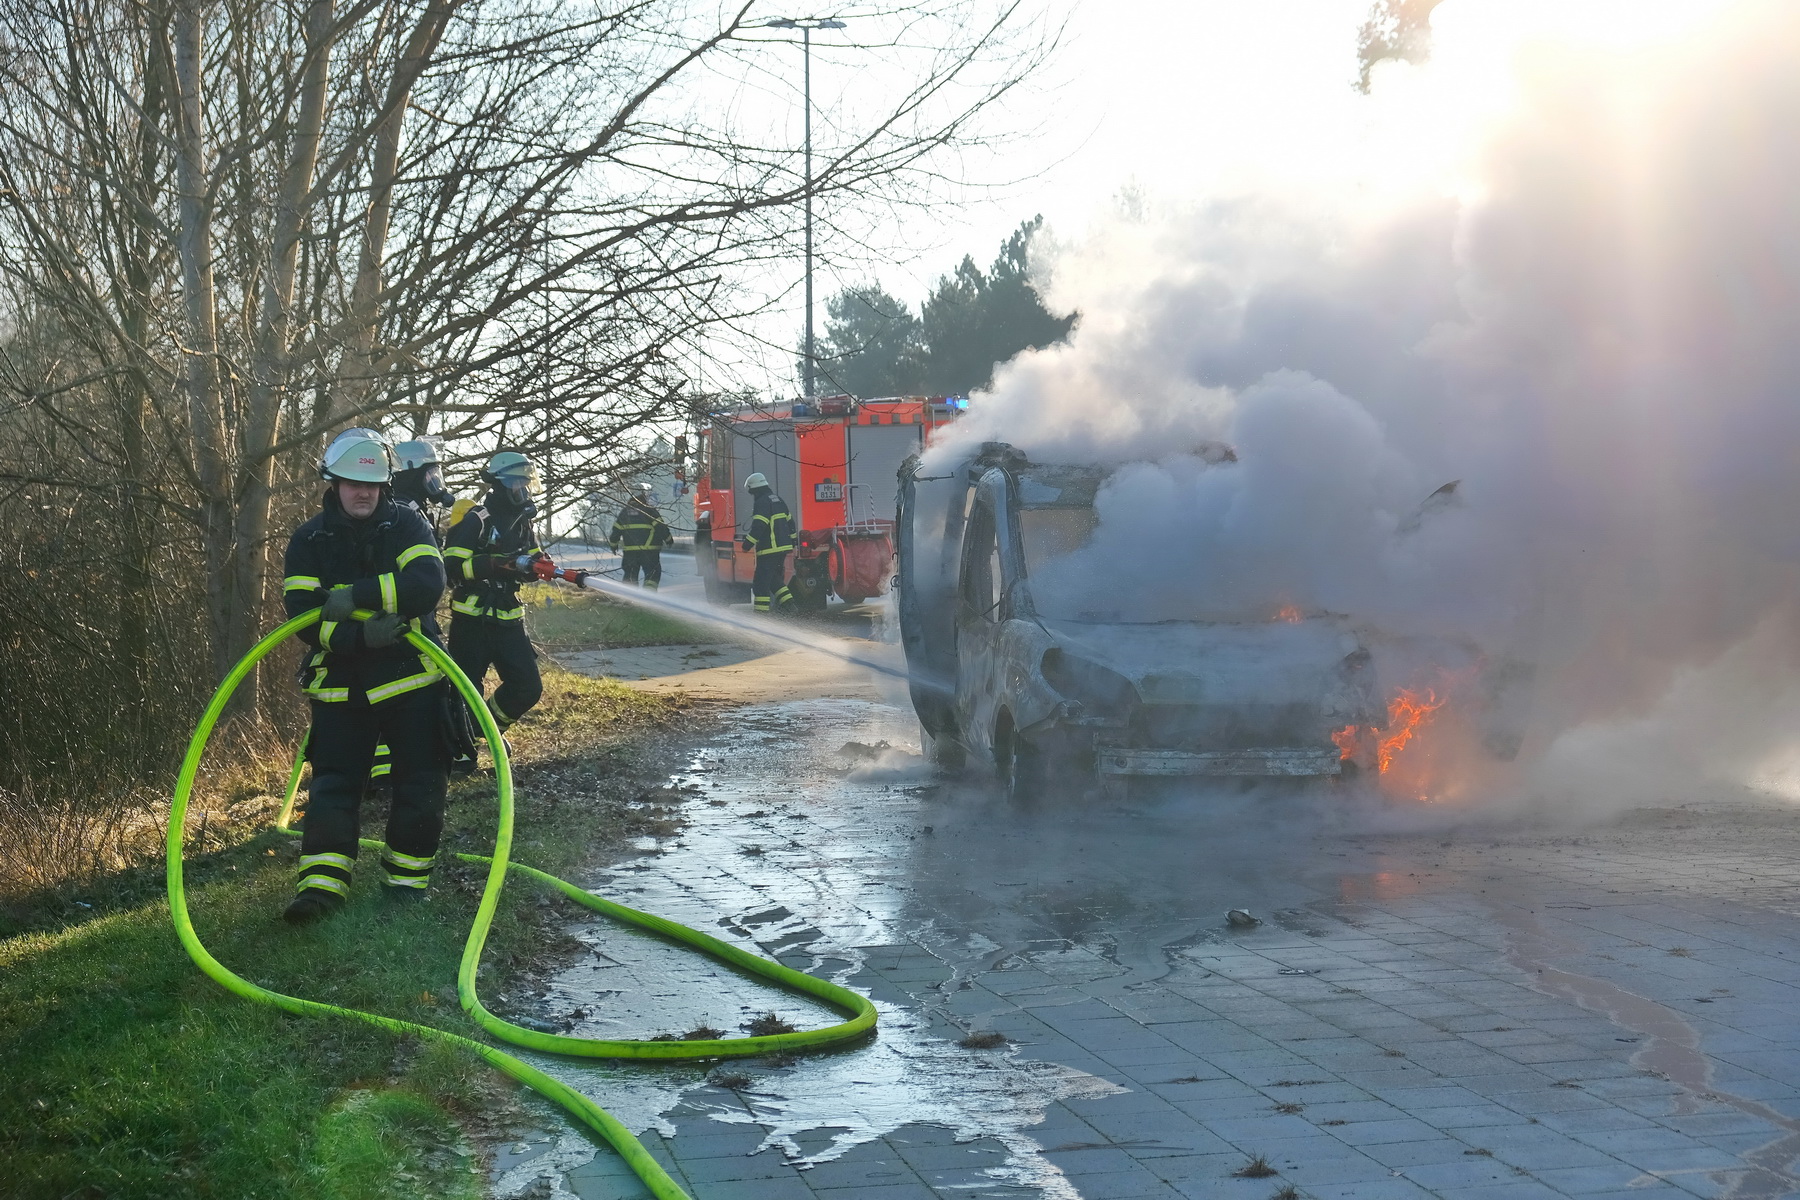 Neben A25 – Kastenwagen geht in Flammen auf